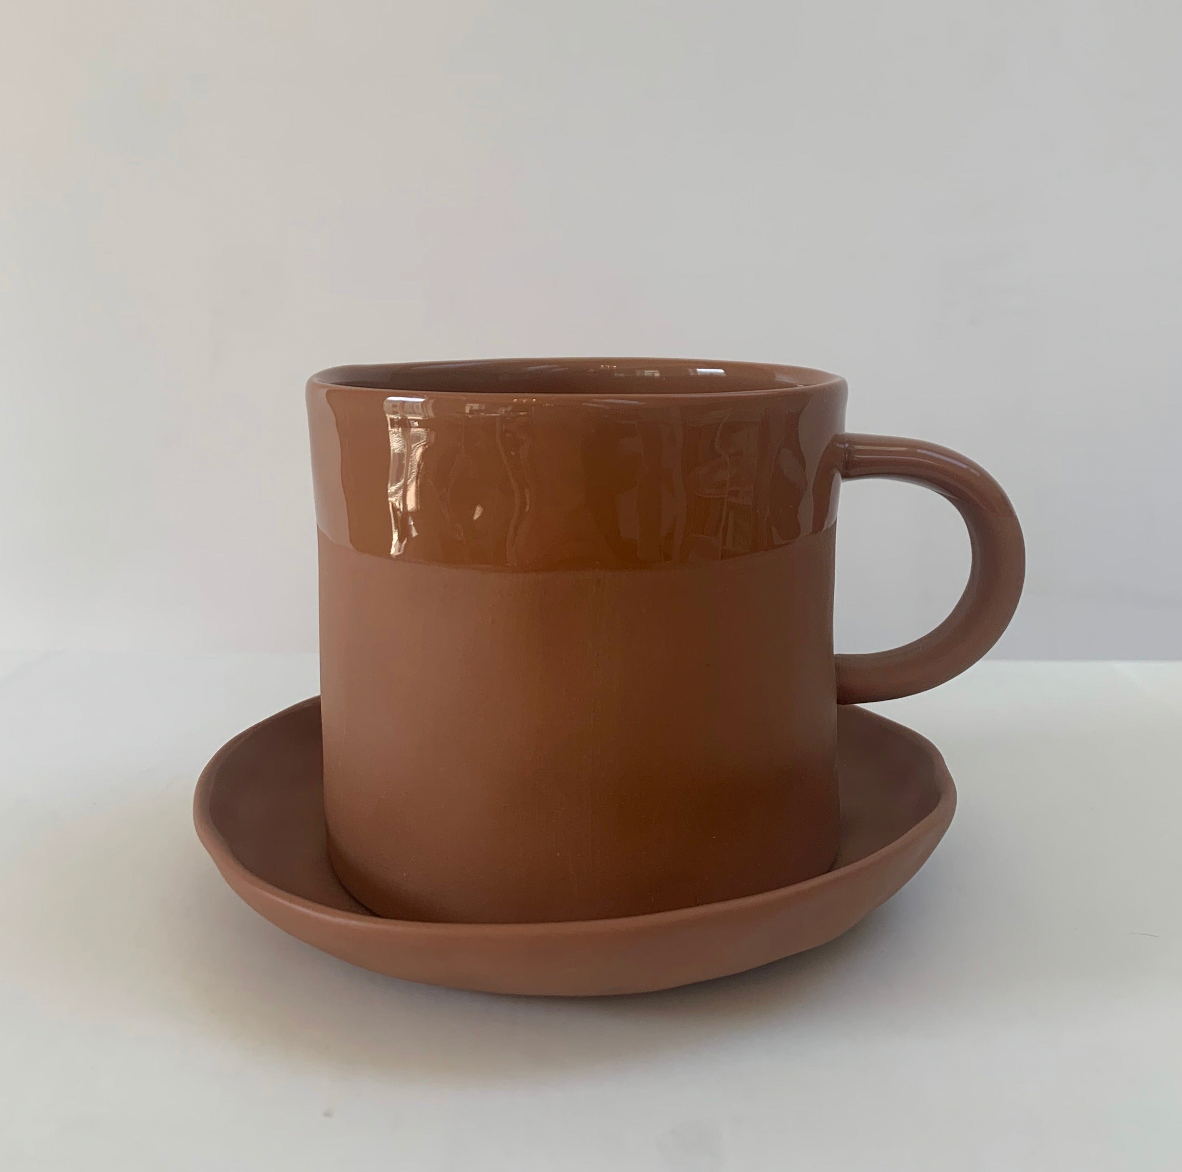 Mug handle TERRACOTTA glossy edge